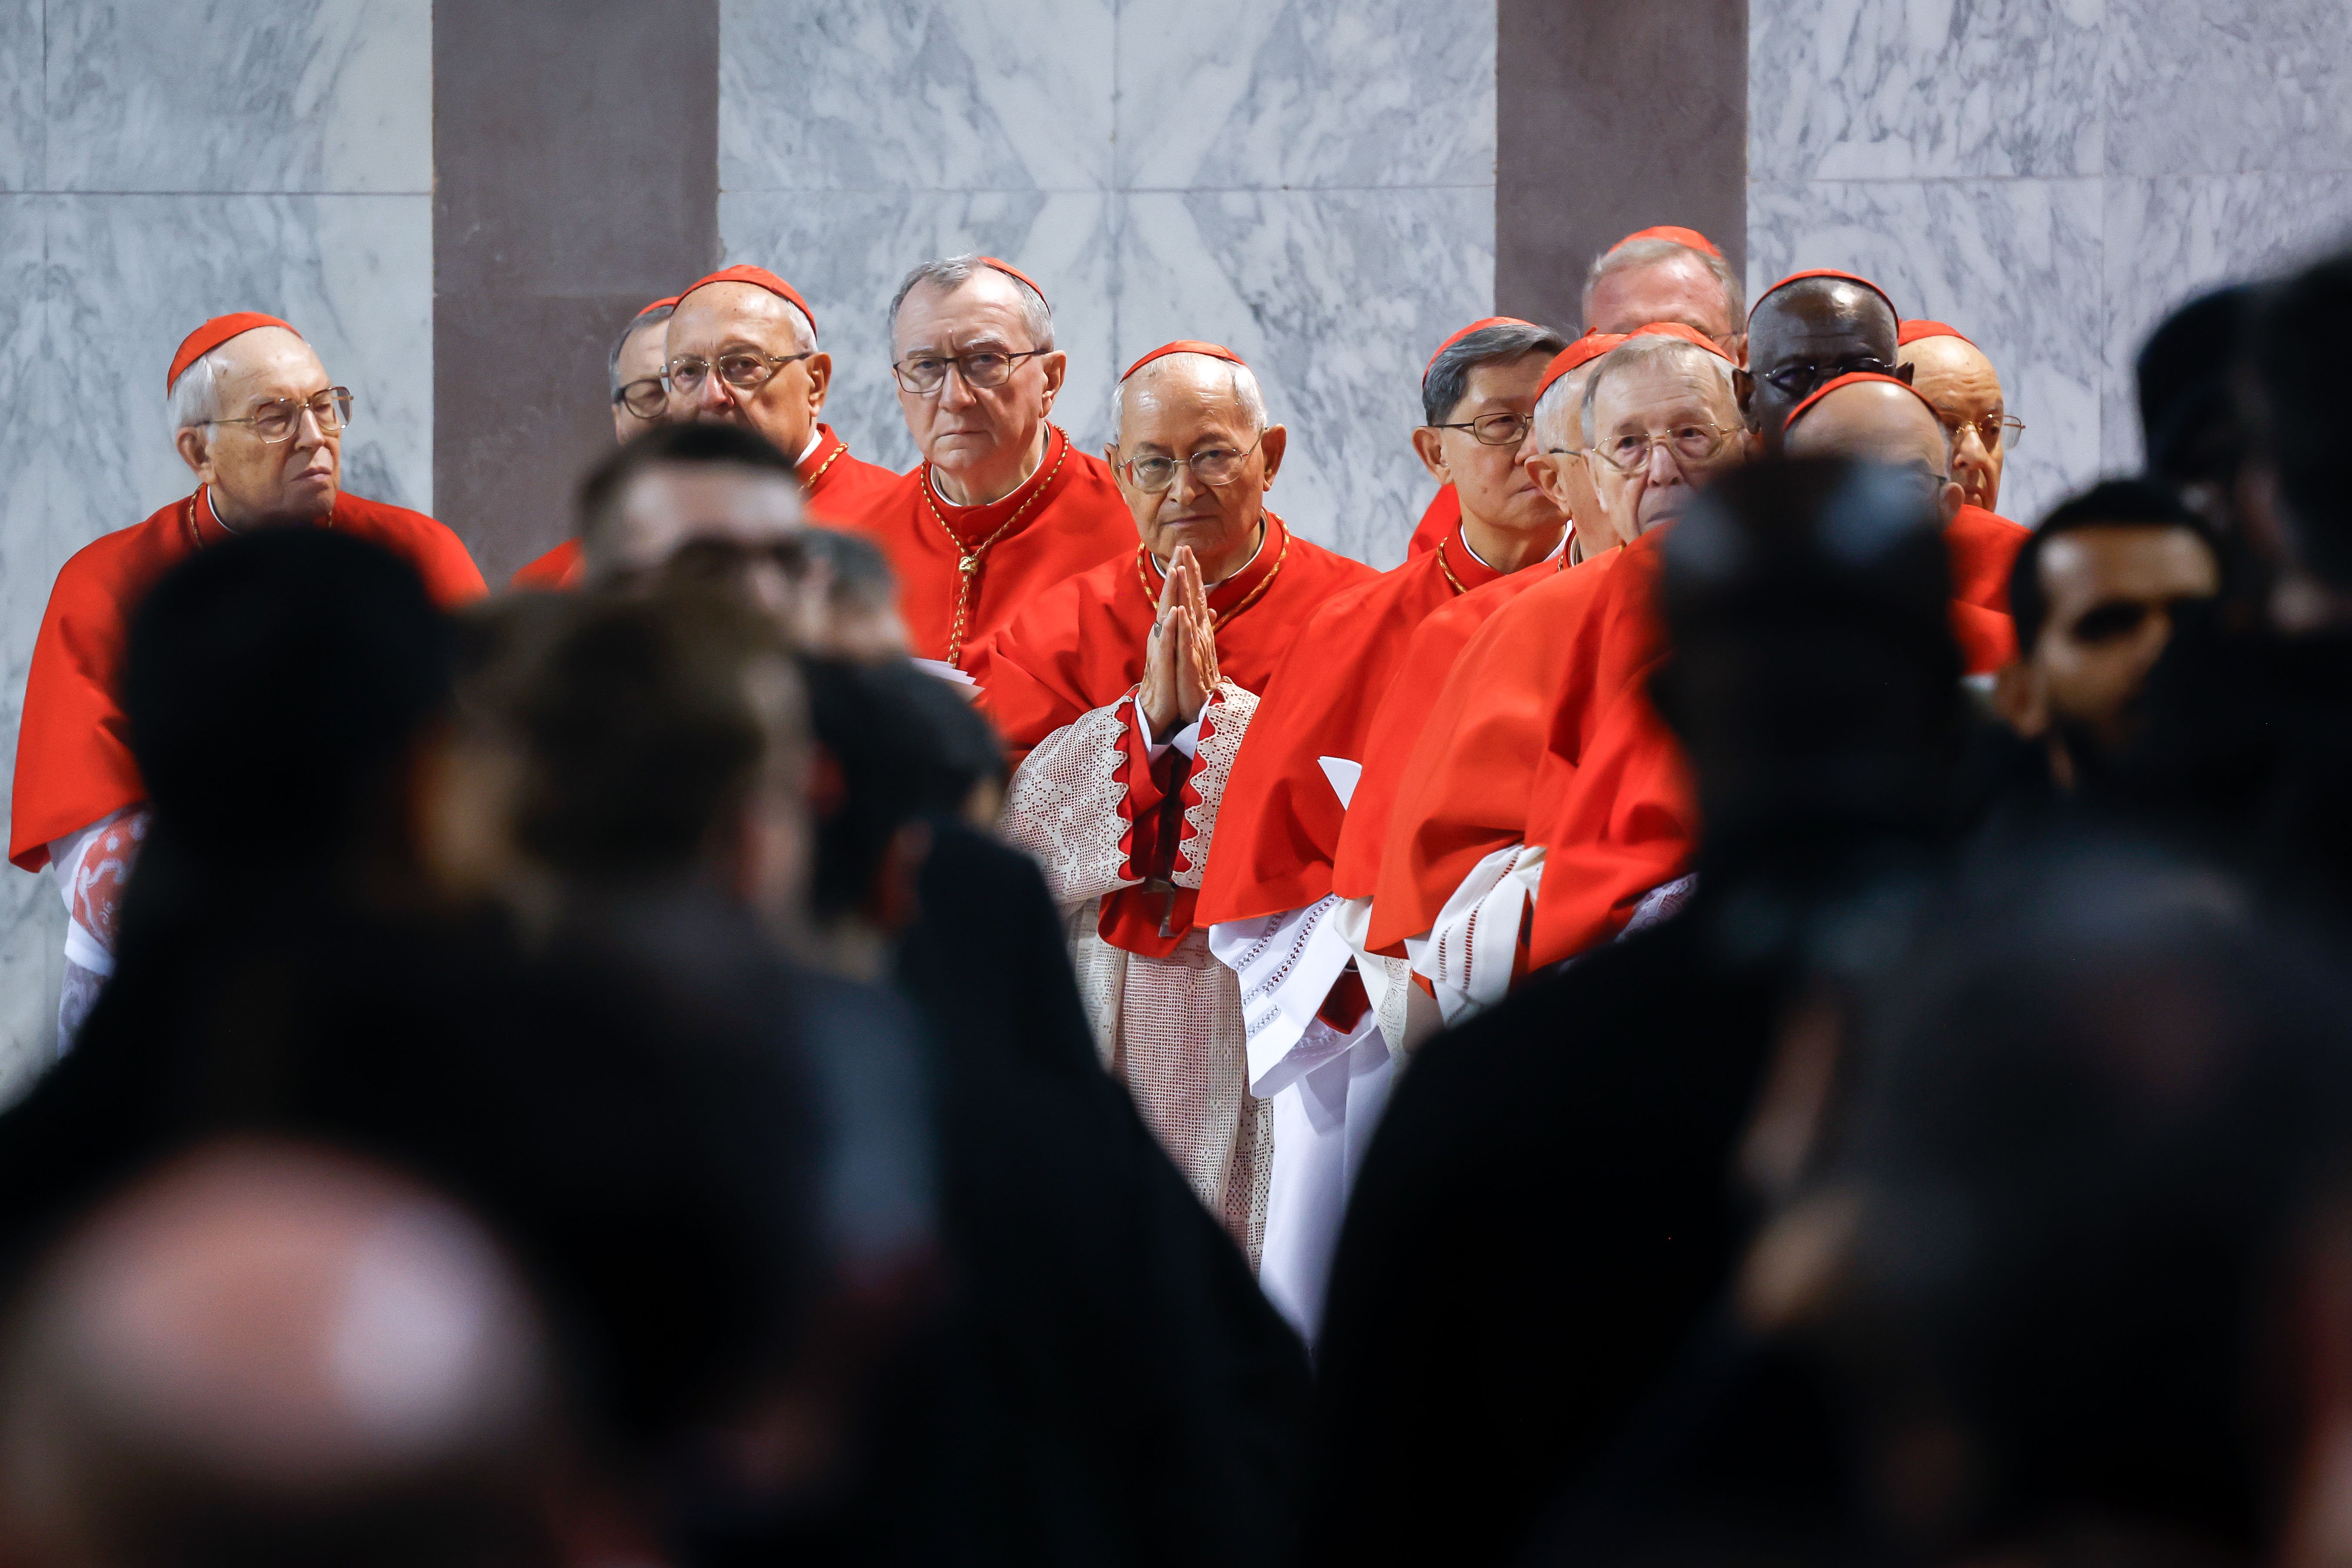 Cardinals pray.